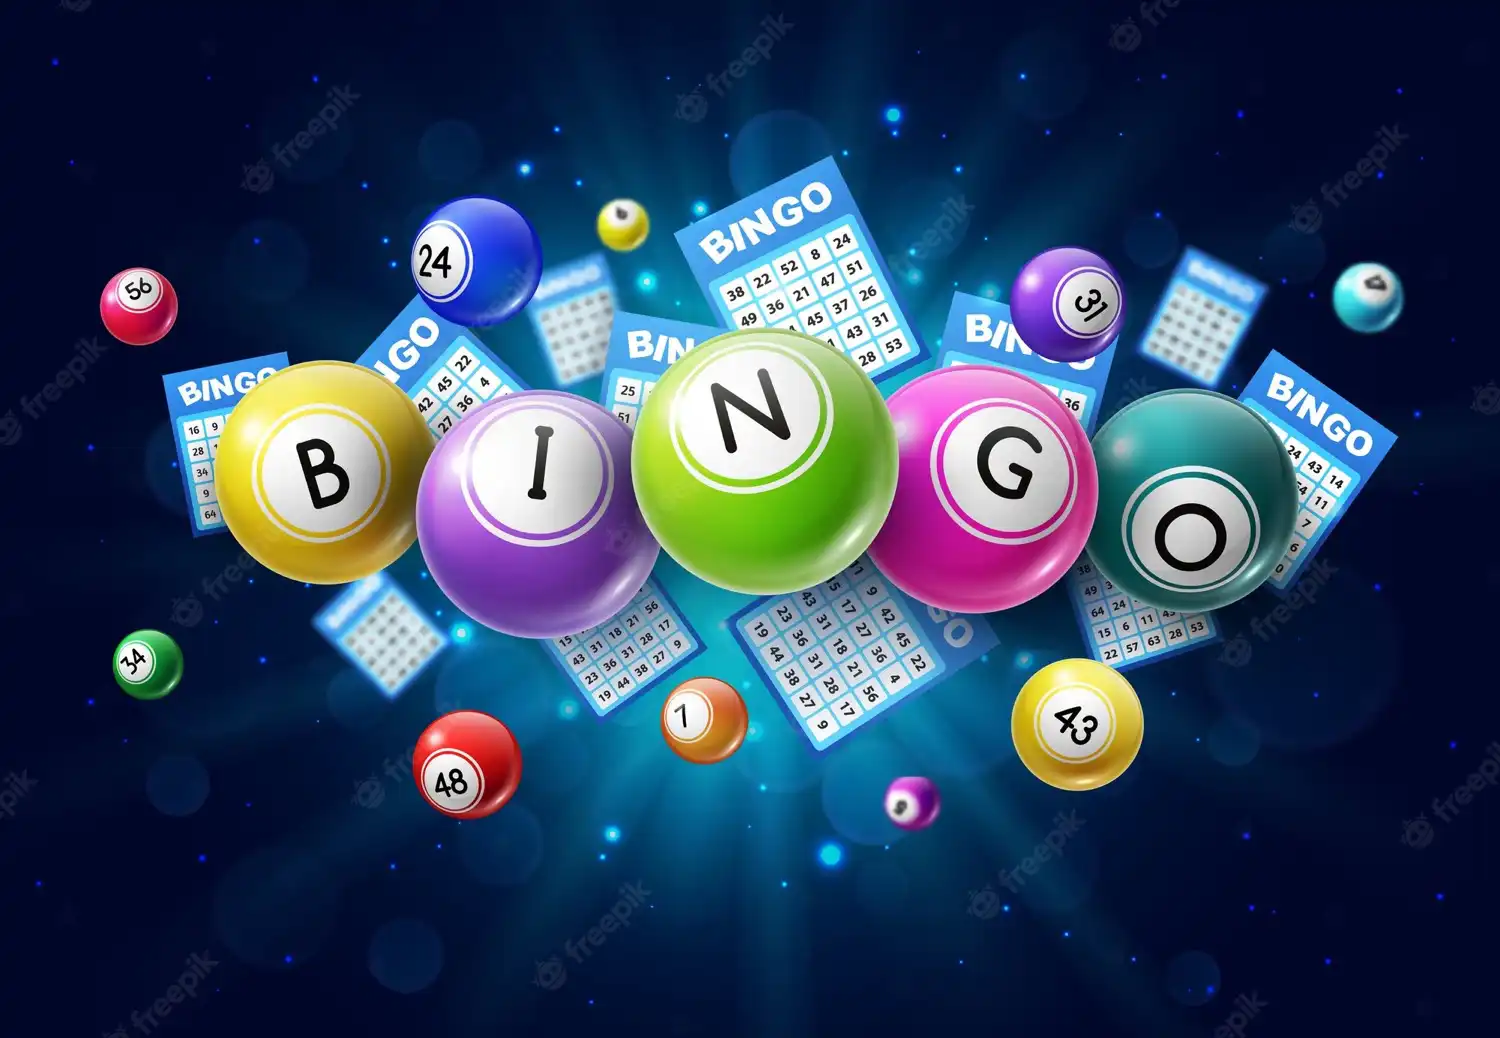 Los tiempos han cambiado: del bingo en reuniones al video bingo